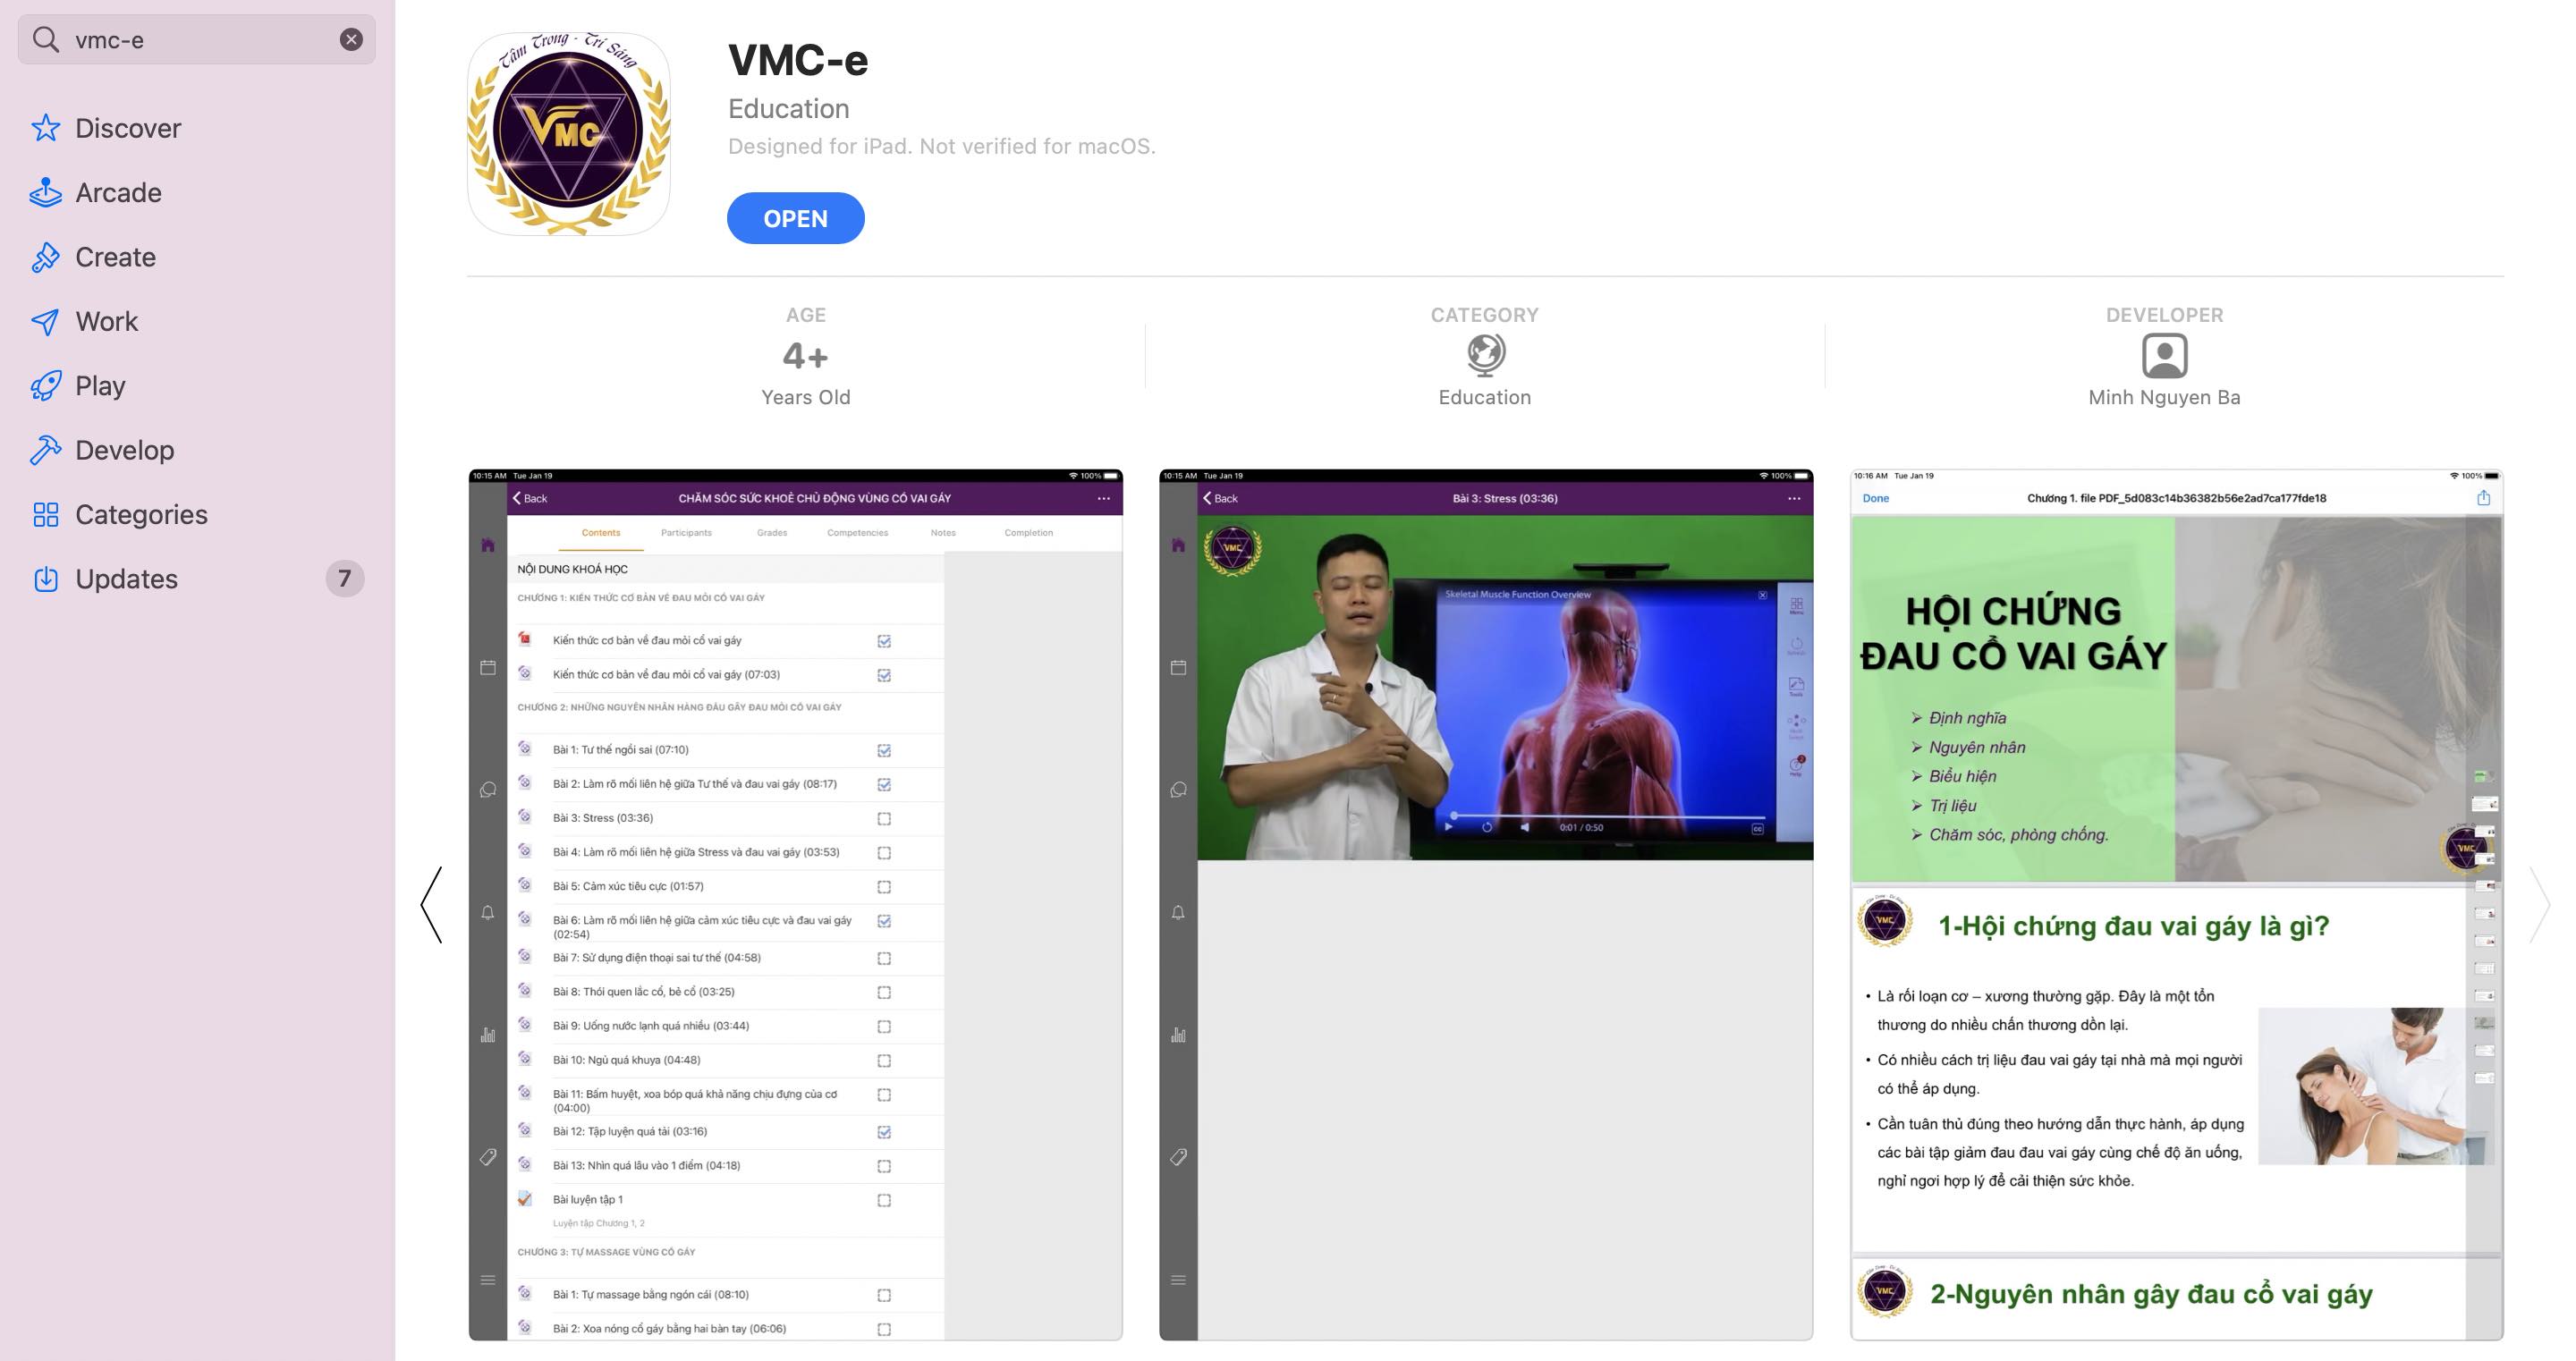 Khoá học của Dr. Lê Hải trên App VMC-E